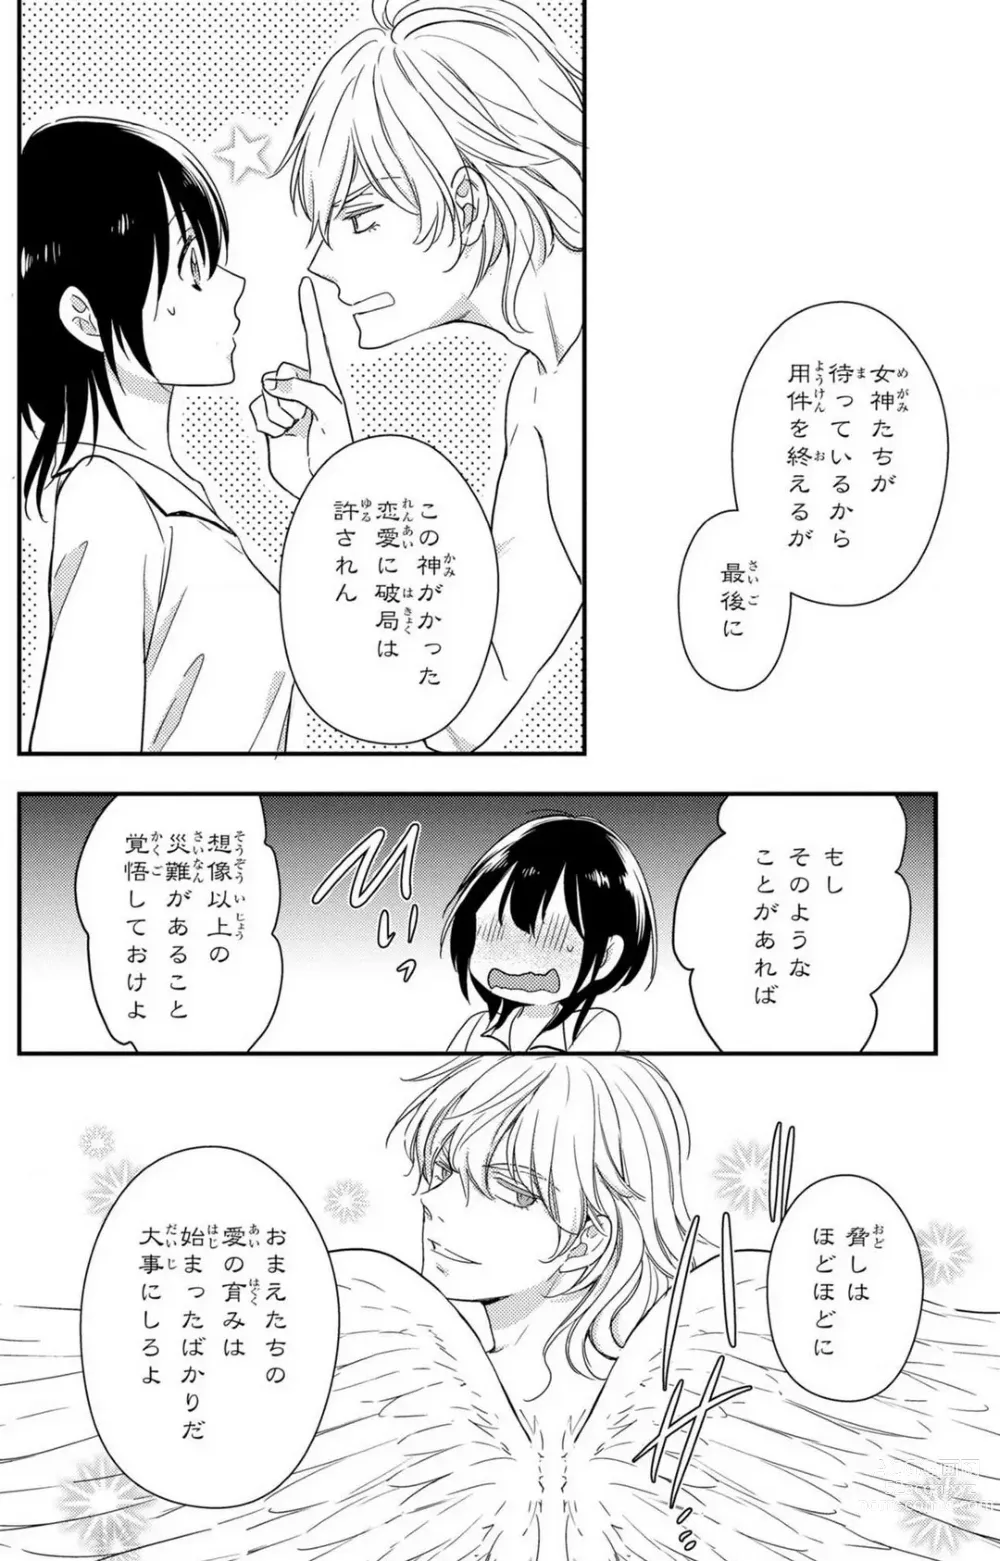 Page 207 of manga Doutei Danshi Nyotaika